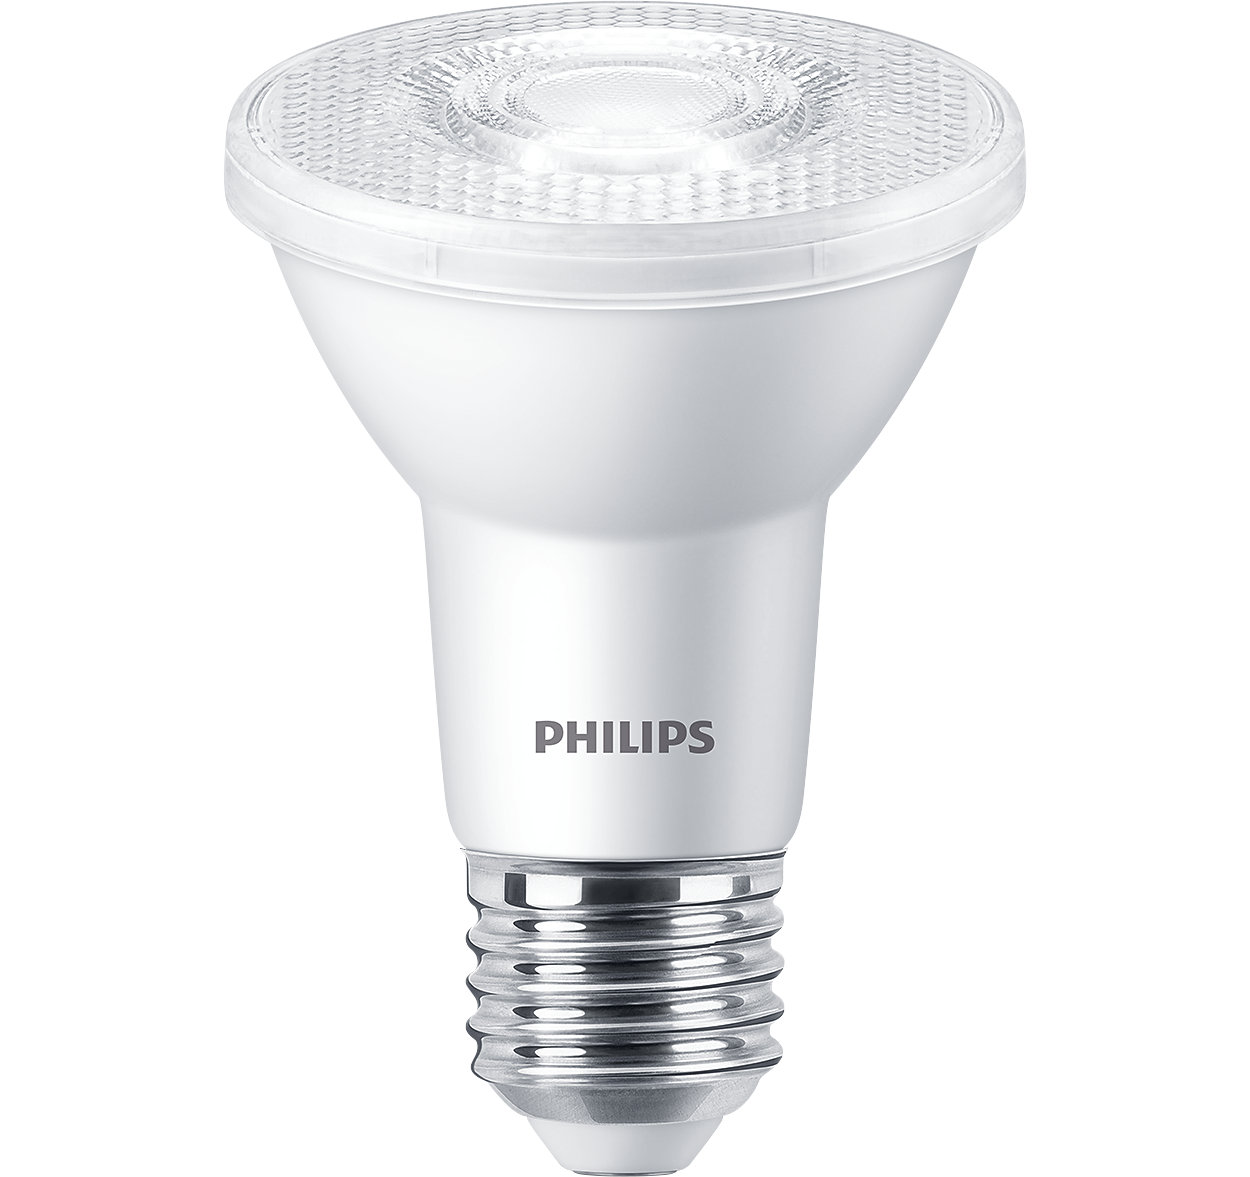 A iluminação de realce de LED ideal com uma aparência perfeita.